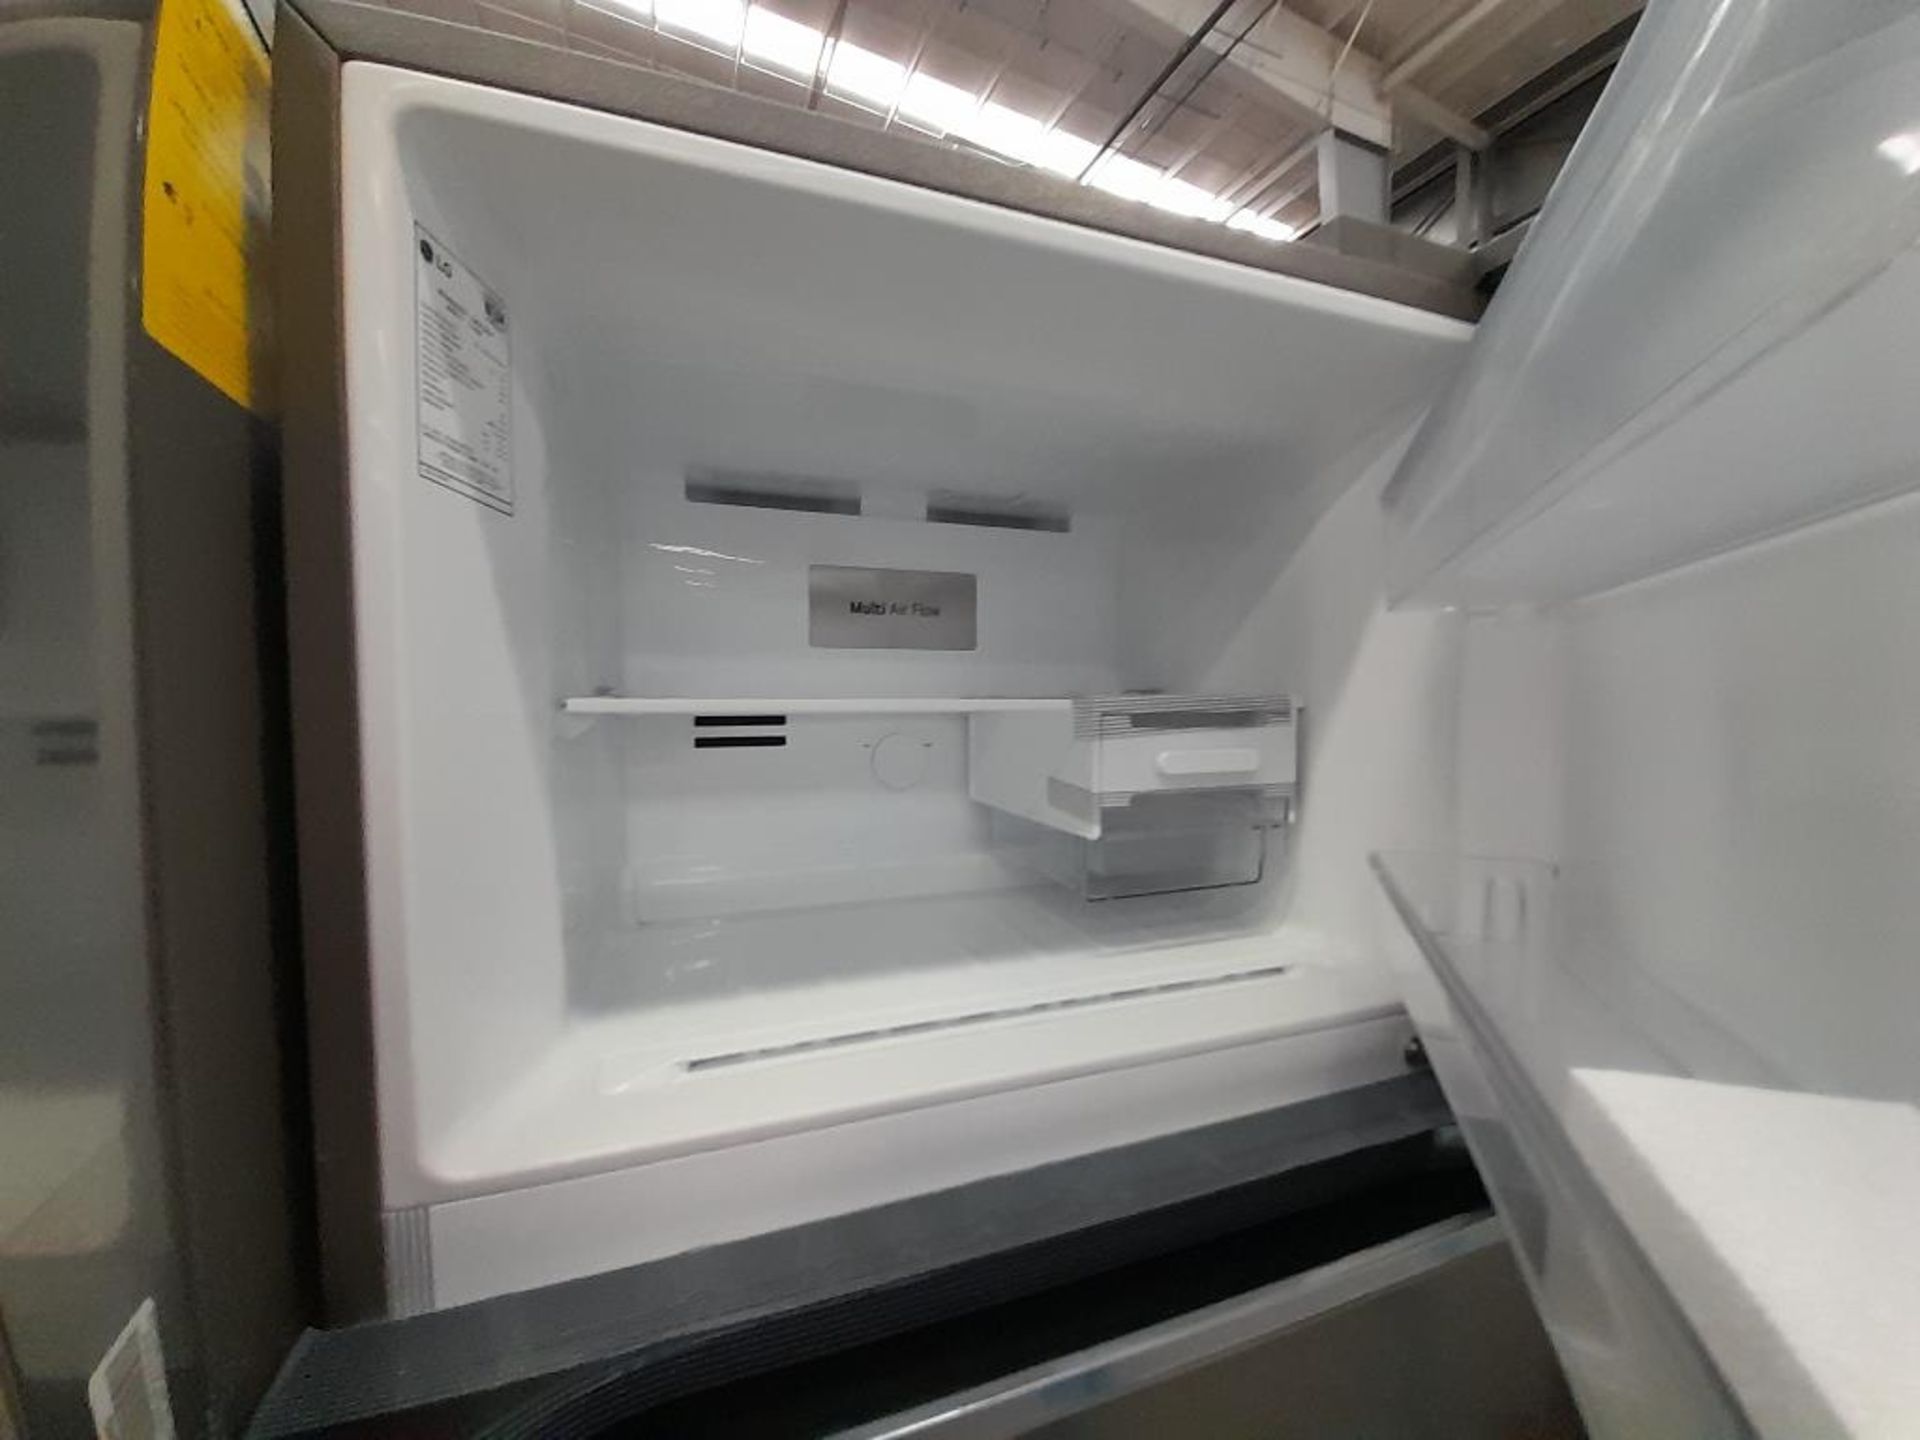 Lote de 2 refrigeradores Contiene: 1 refrigerador con dispensador de agua Marca LG, Modelo VT40WP, - Image 6 of 7